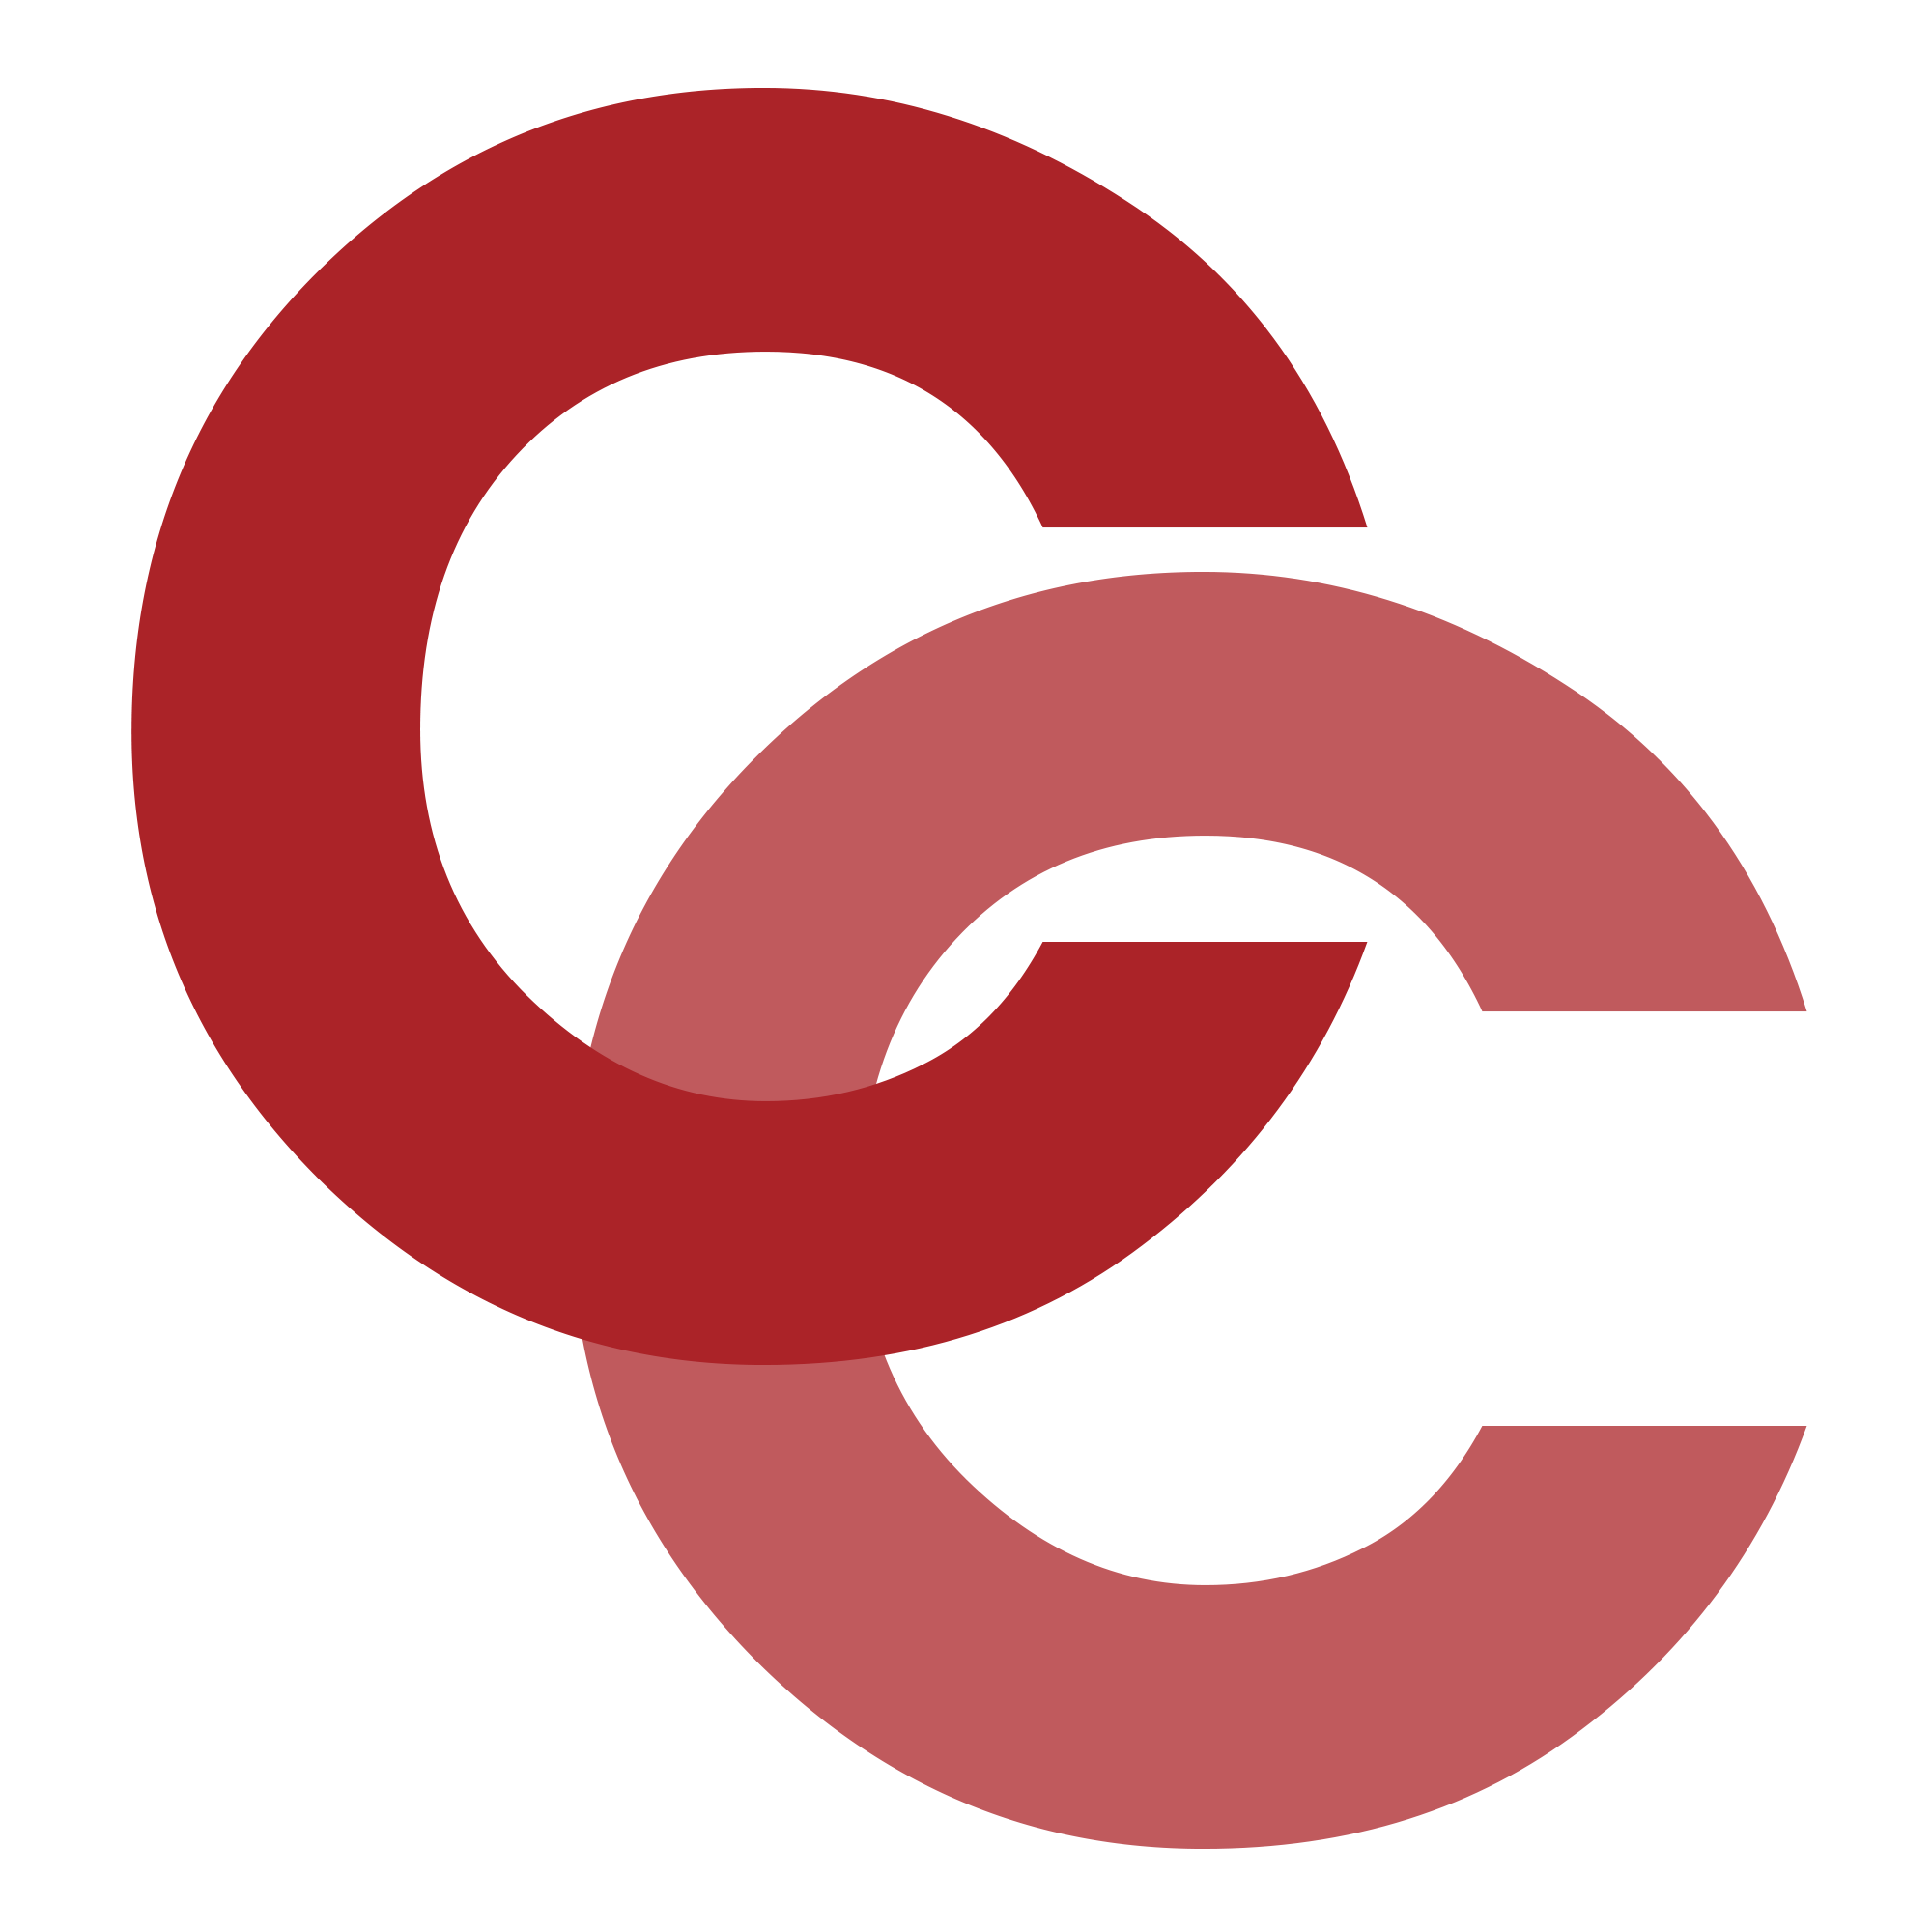 Red CC Logo - Cc logo png 6 » PNG Image